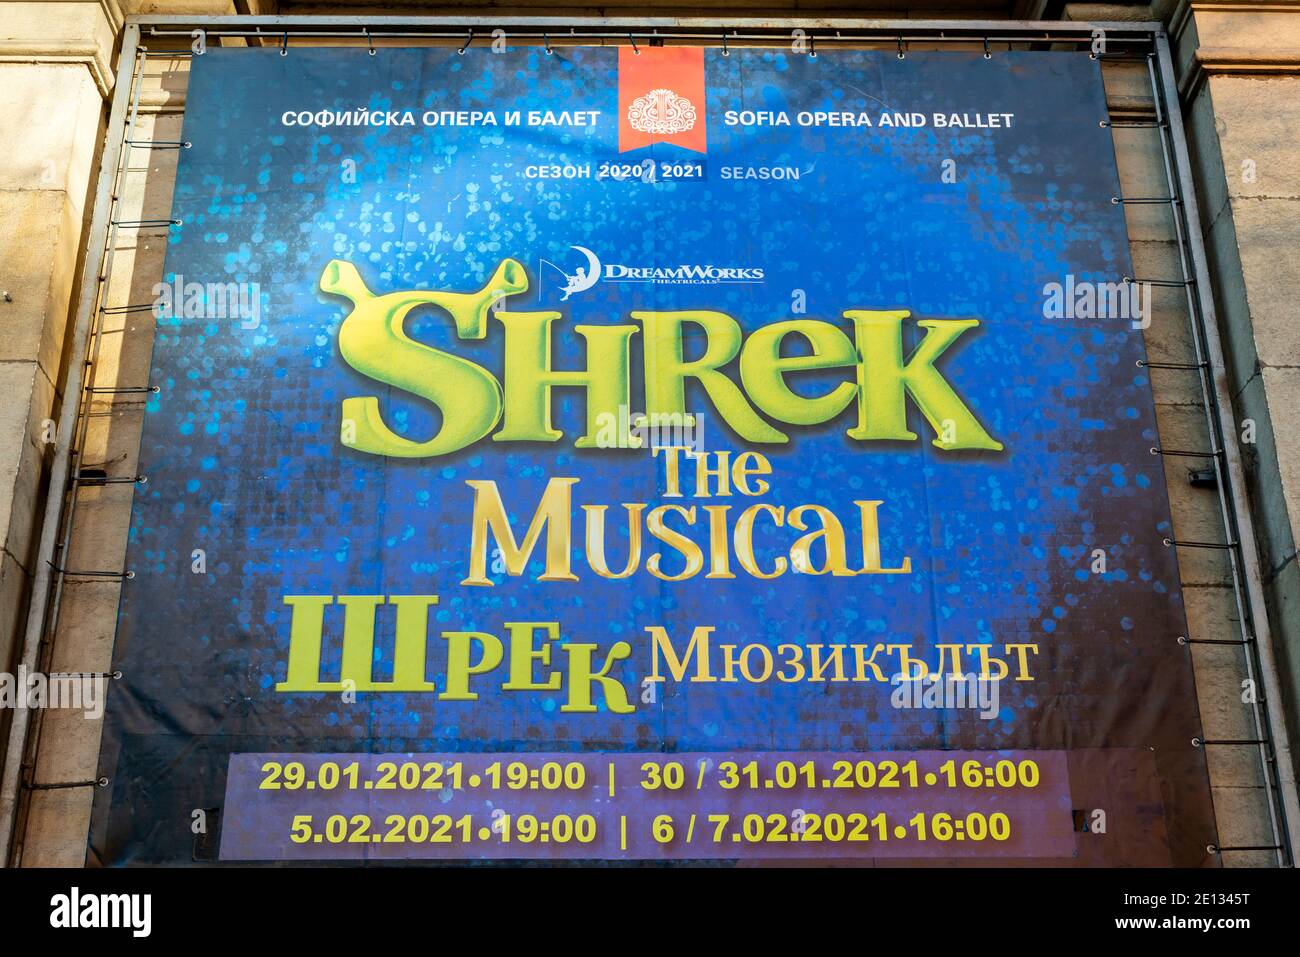 Plakat mit Shrek the Musical als Werbung für die bevorstehende Veranstaltung 2021 an der Sofia Oper und Ballett in Sofia Bulgarien Osteuropa EU Stockfoto